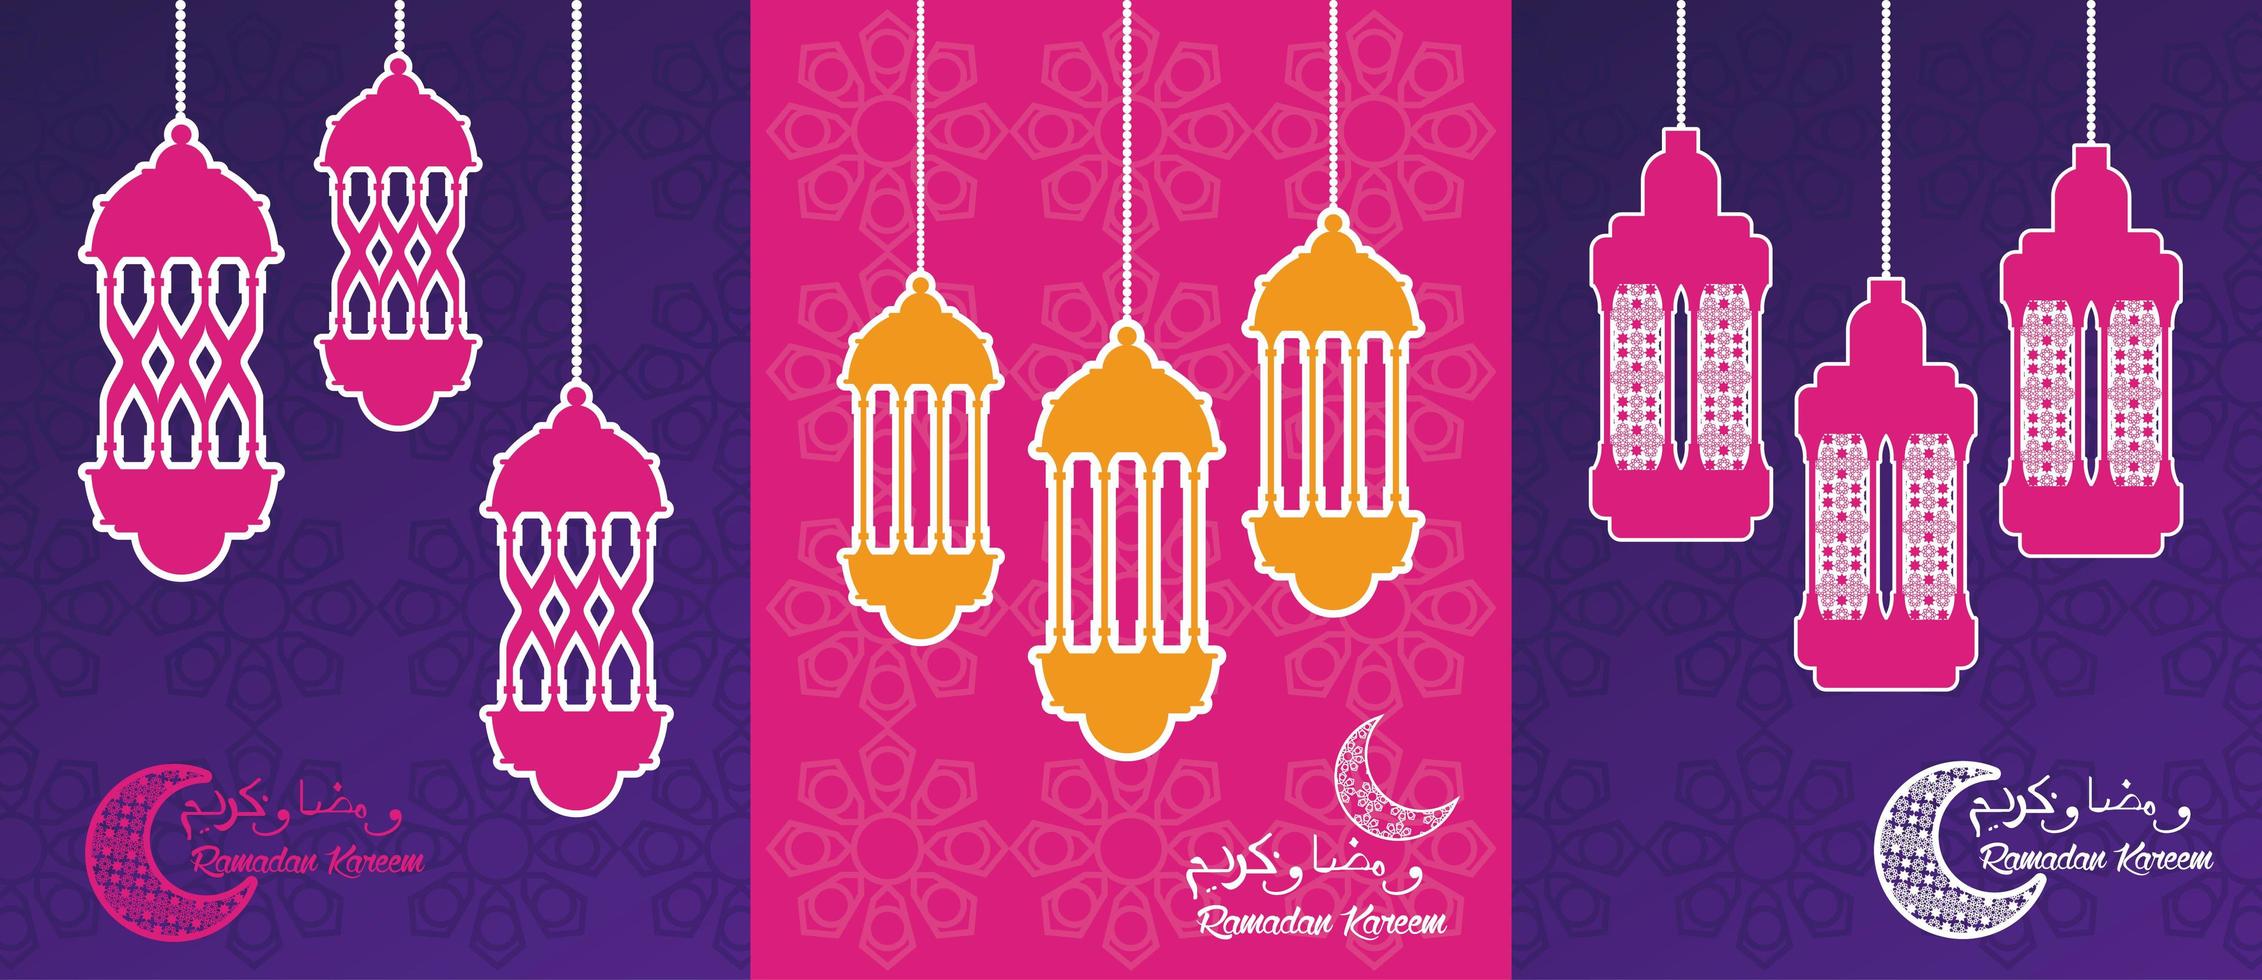 cartão comemorativo ramadan kareem com lanternas penduradas vetor